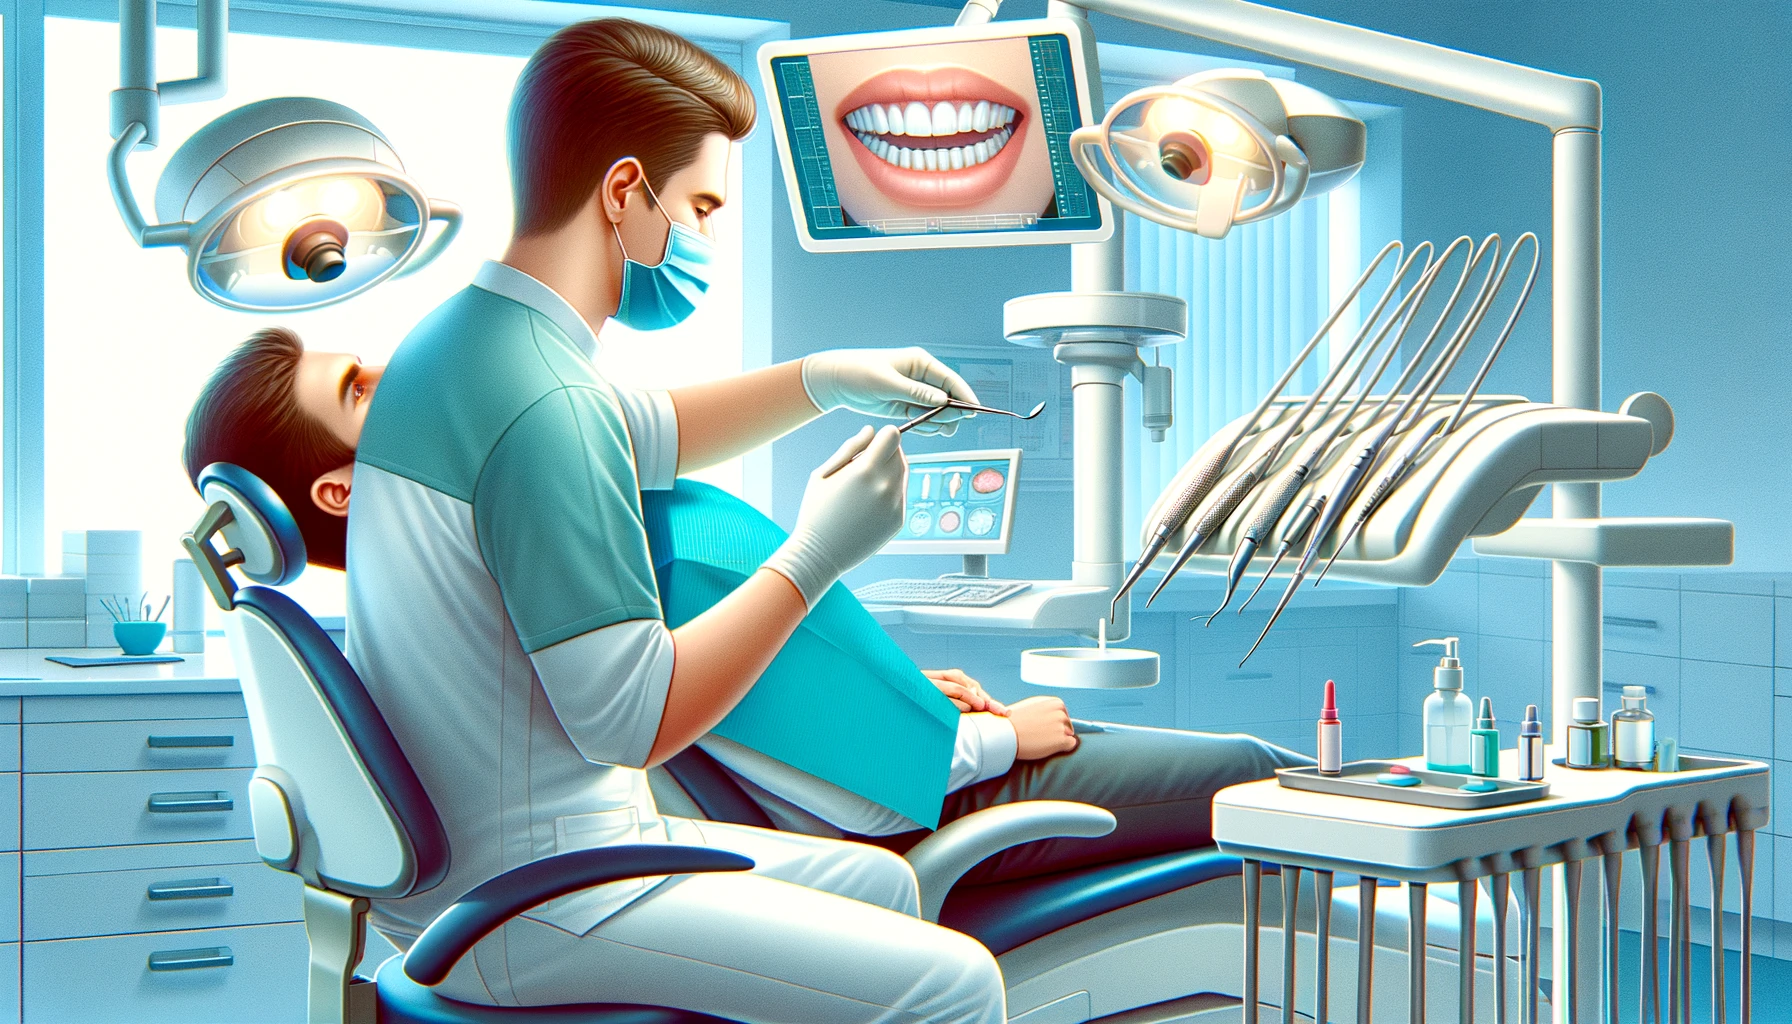 Illustrasjon av profesjonell tannbehandling med tannlege som undersøker pasients tenner i klinikk